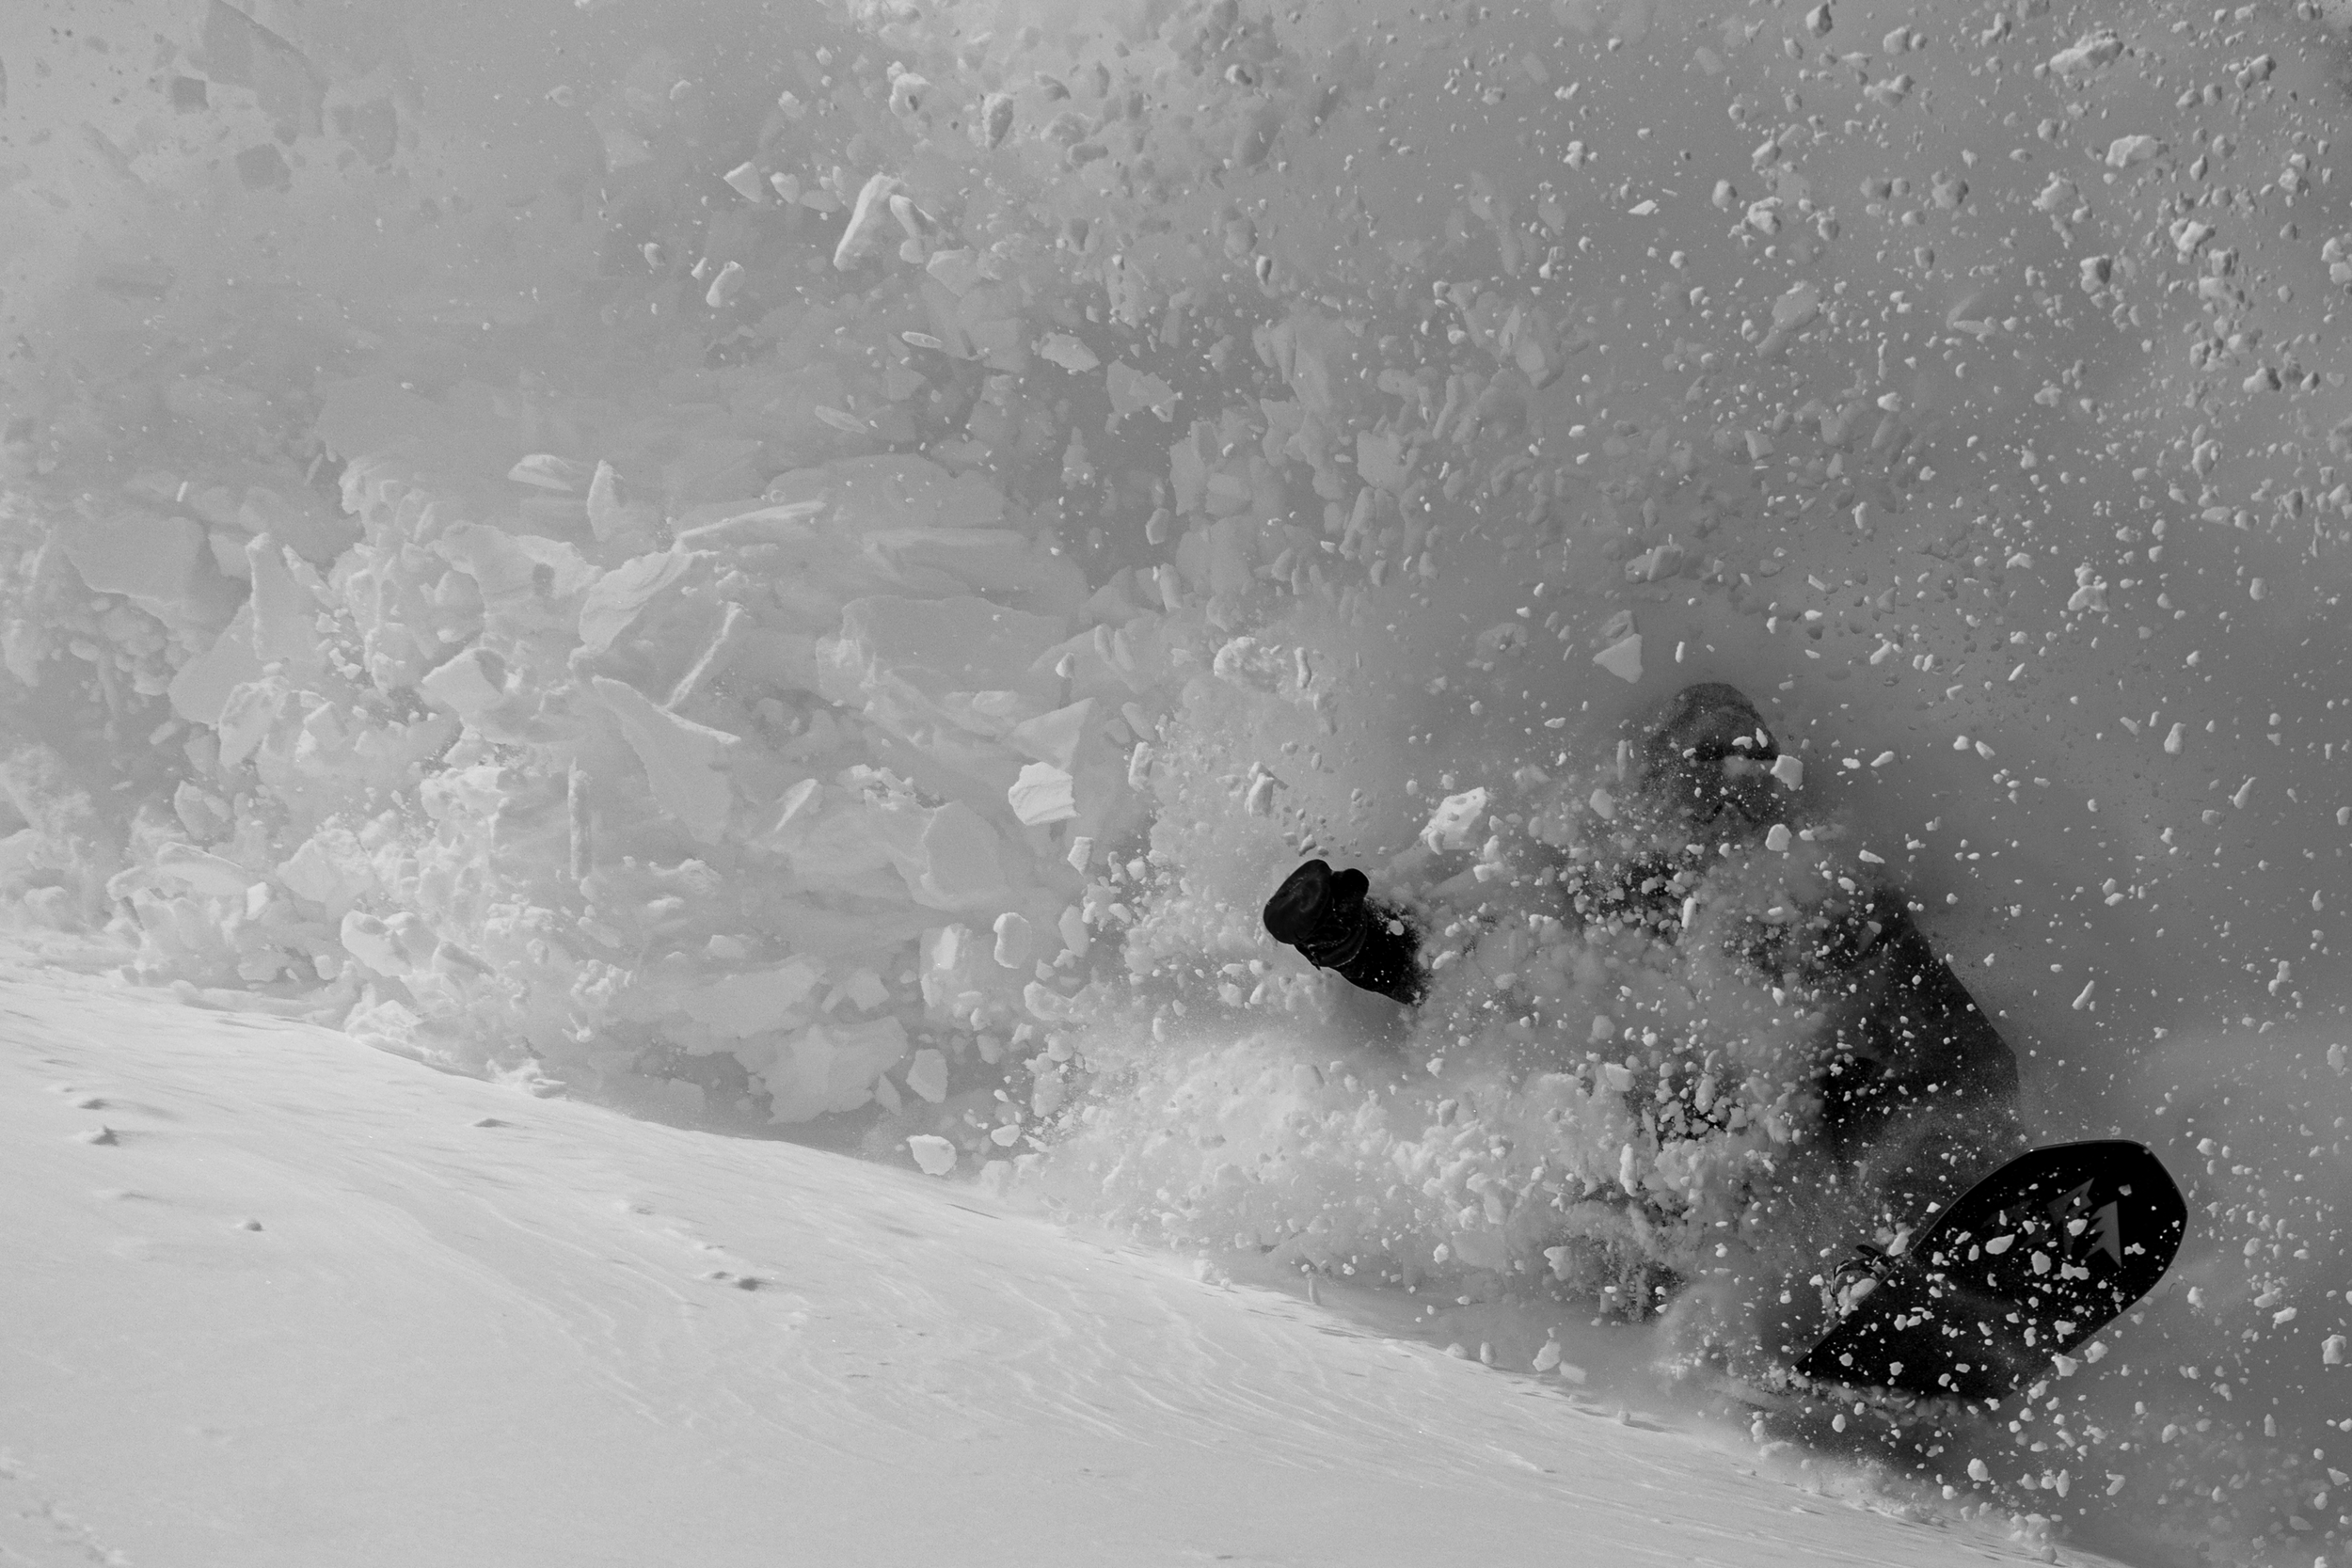 Jones_23-24_Snowboard-16.png